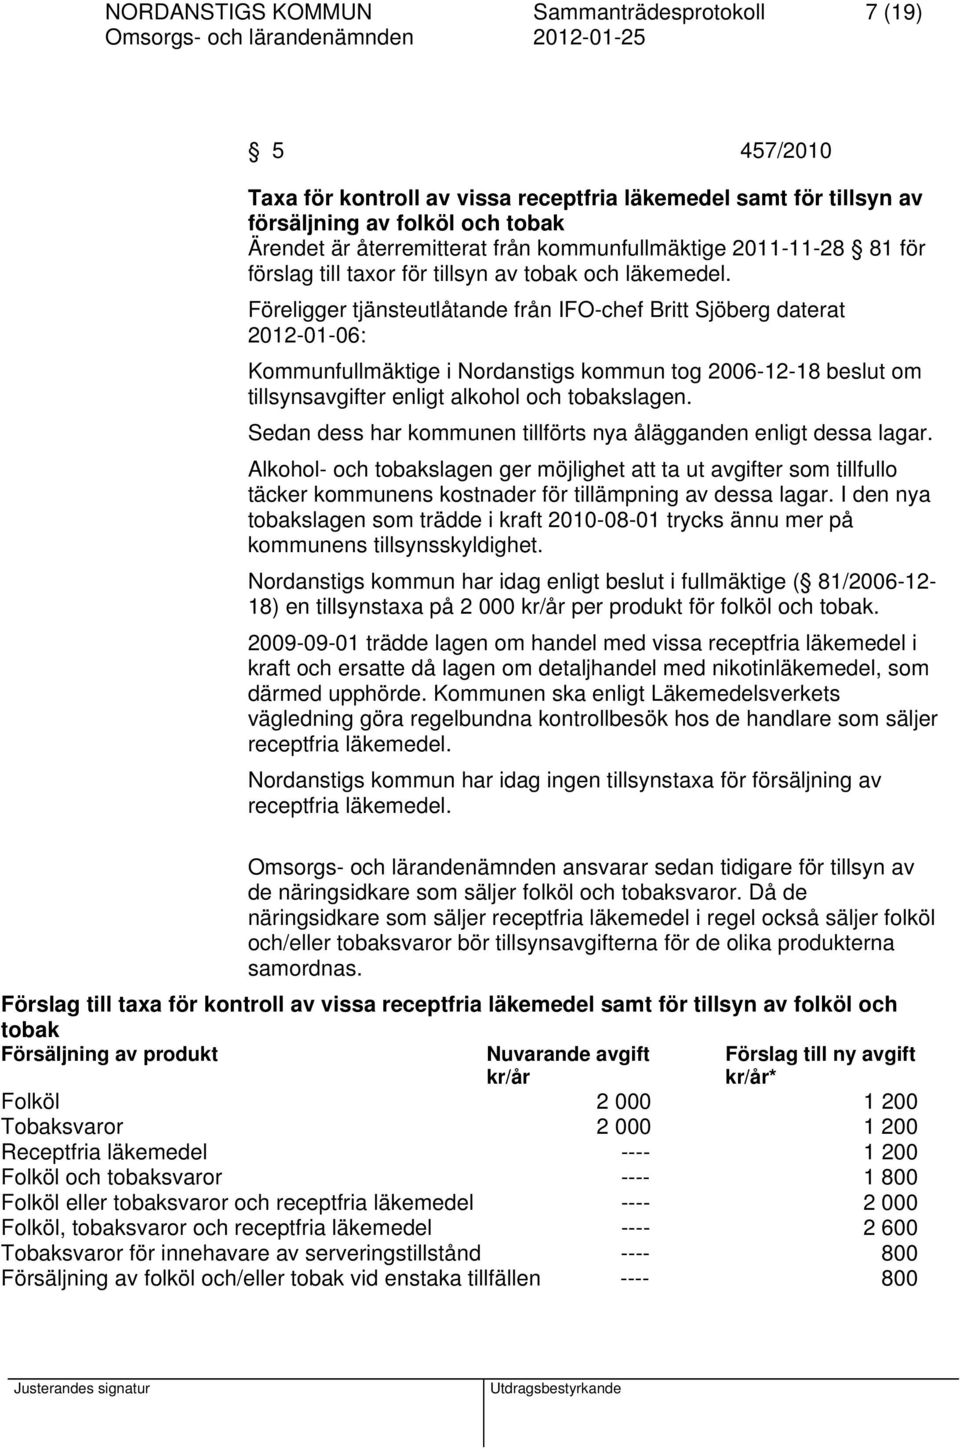 Föreligger tjänsteutlåtande från IFO-chef Britt Sjöberg daterat 2012-01-06: Kommunfullmäktige i Nordanstigs kommun tog 2006-12-18 beslut om tillsynsavgifter enligt alkohol och tobakslagen.